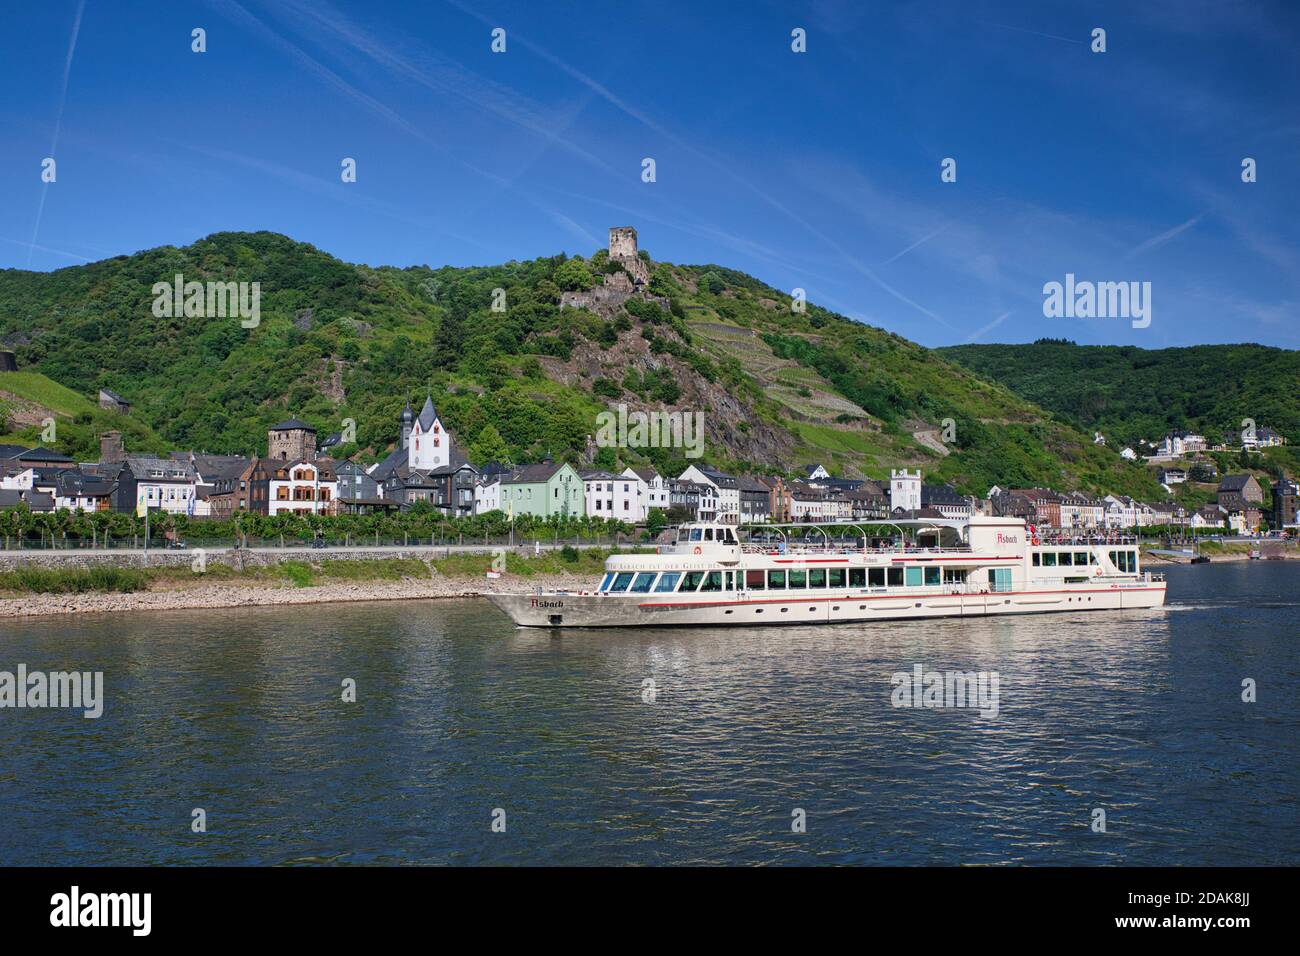 Eine Flusskreuzfahrt auf dem Rhein segelt entlang des Flusses zur Kulisse einer Stadt mit einer Burg auf einem Hügel im Hintergrund. Am Rhein, Deutschland Stockfoto